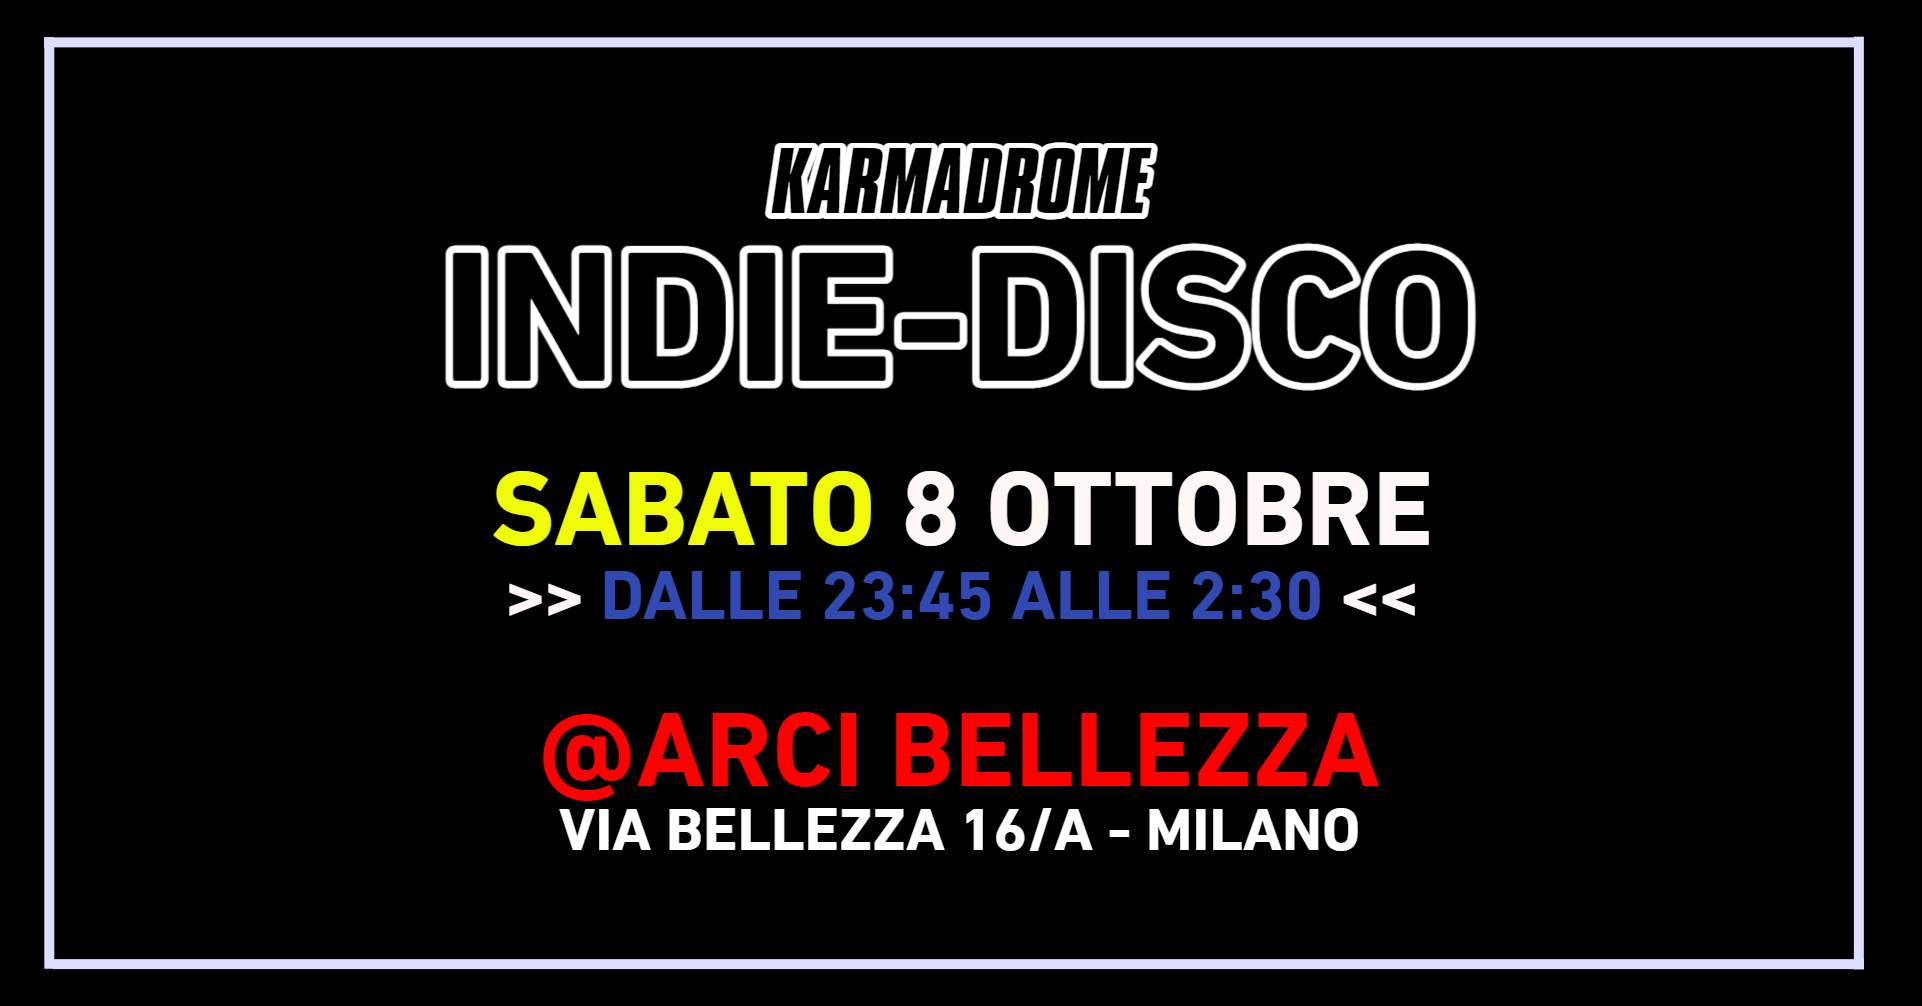 Karmadrome: Indie-Disco at Arci Bellezza, Milan